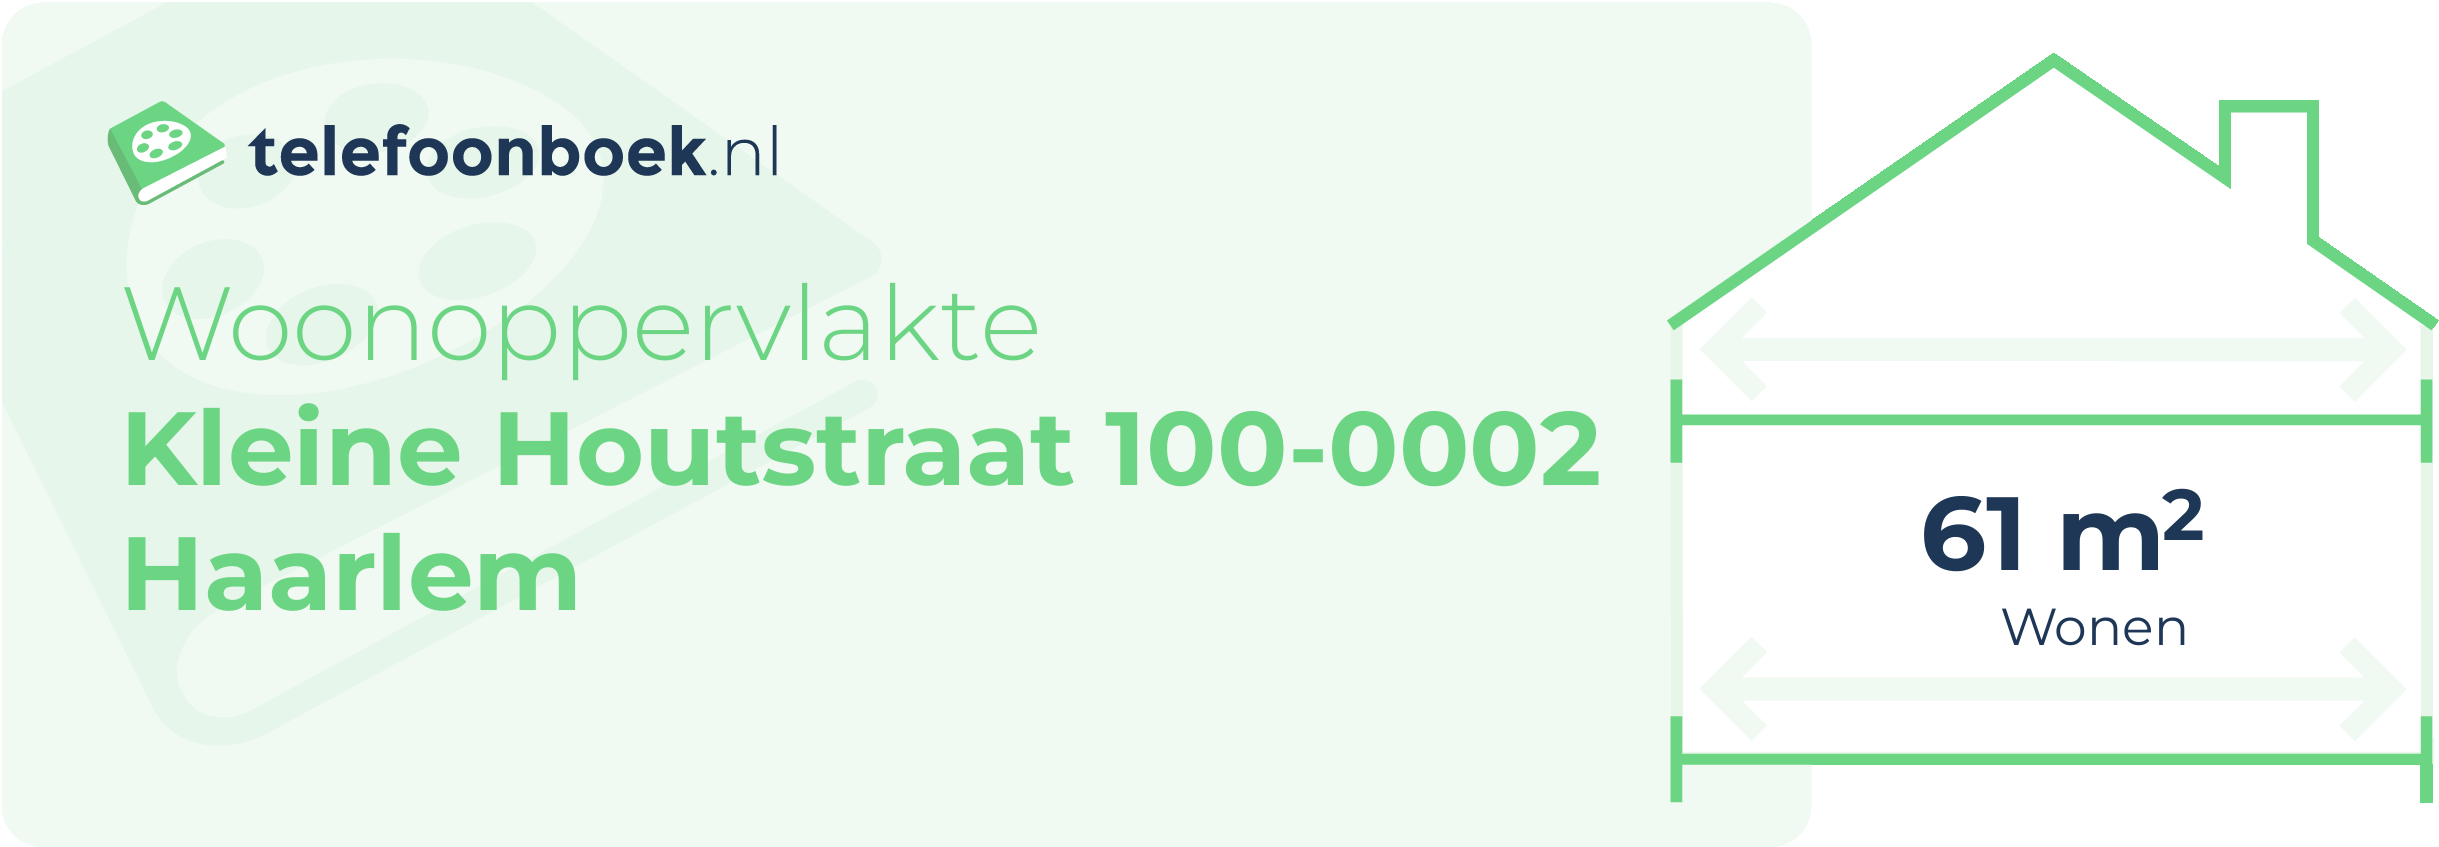 Woonoppervlakte Kleine Houtstraat 100-0002 Haarlem